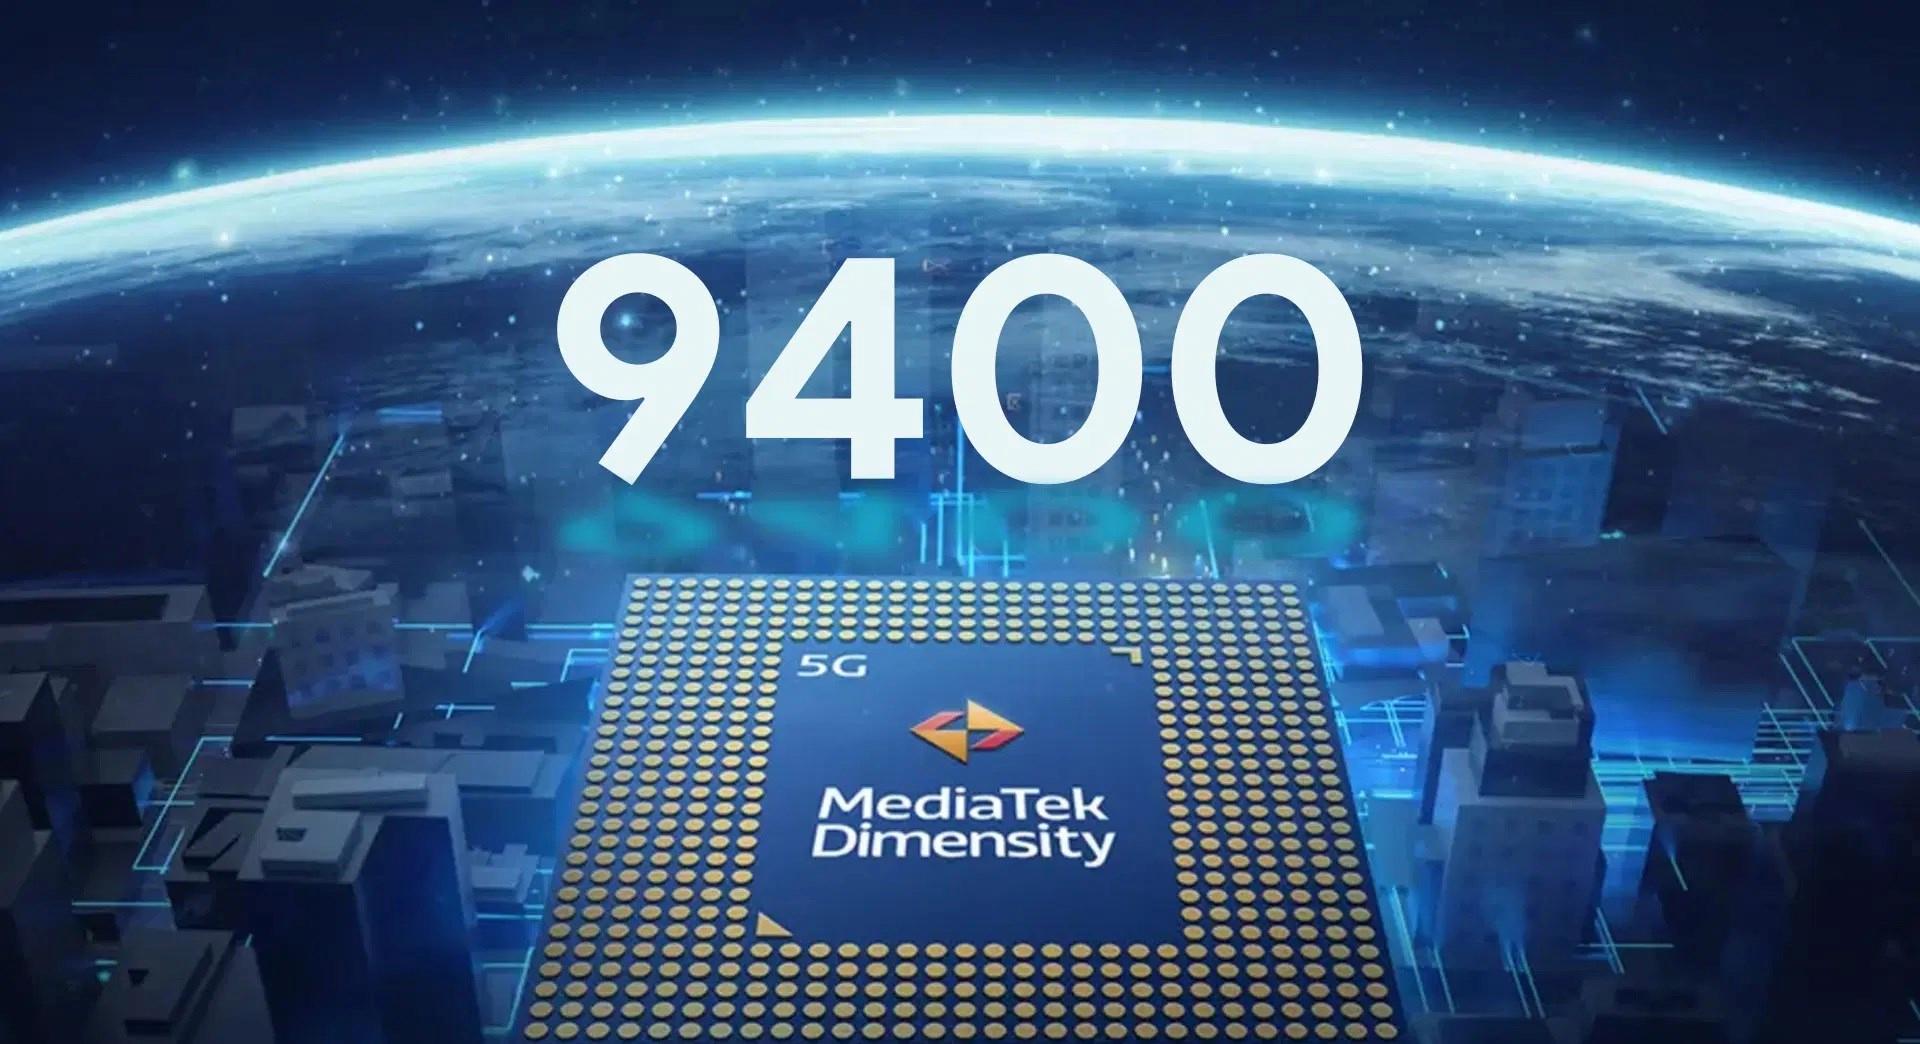 MediaTek ve TSMC anlaştı: Dimensity 9400 sınır tanımayacak